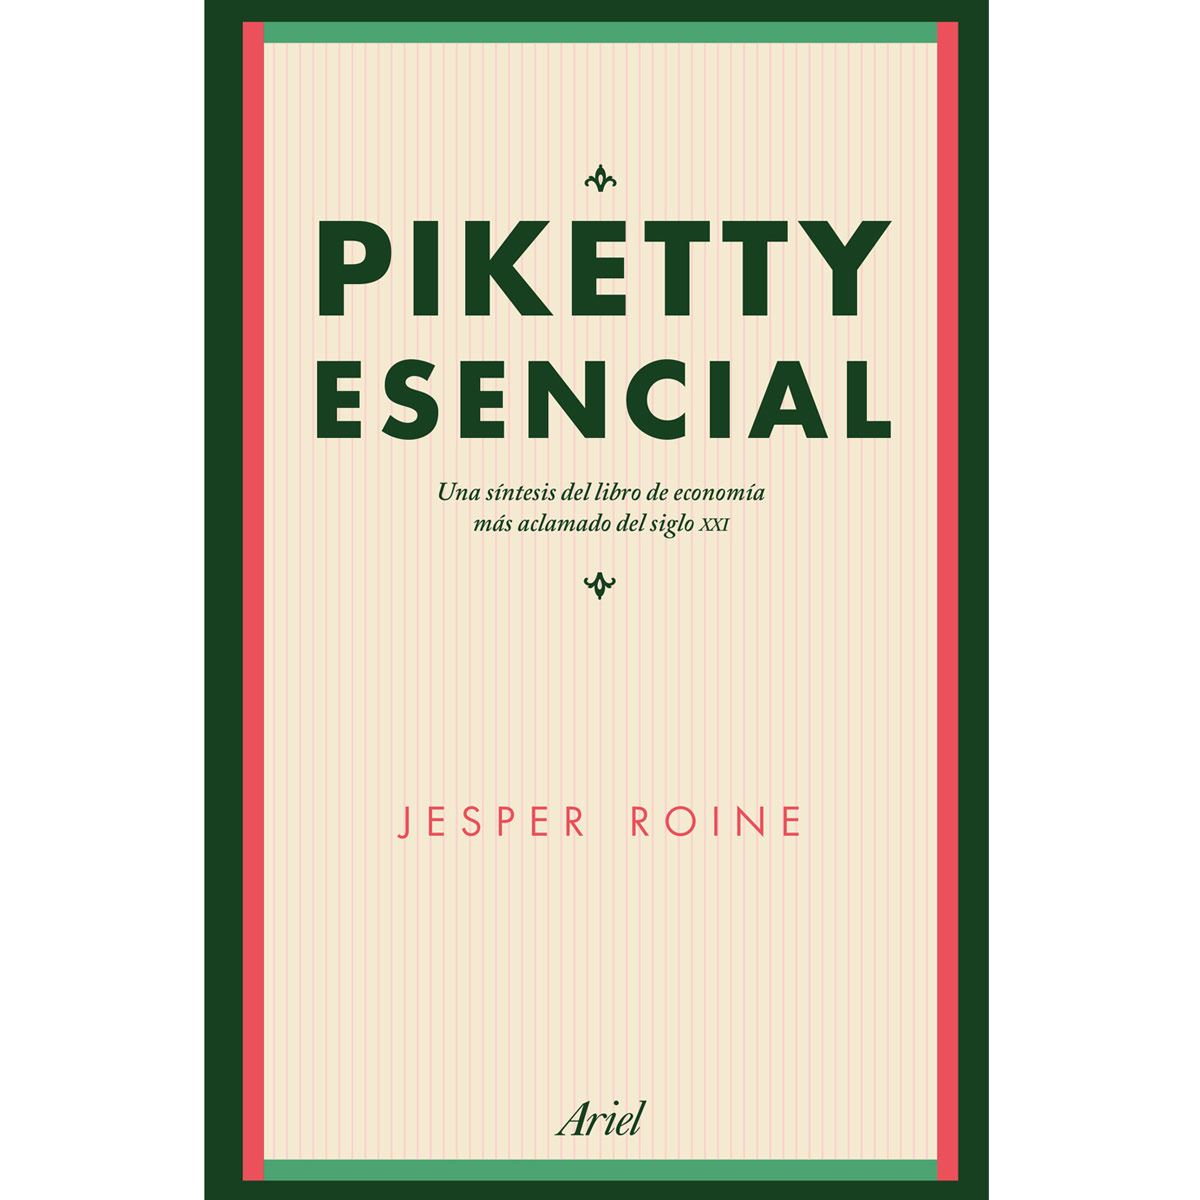 Piketty esencial